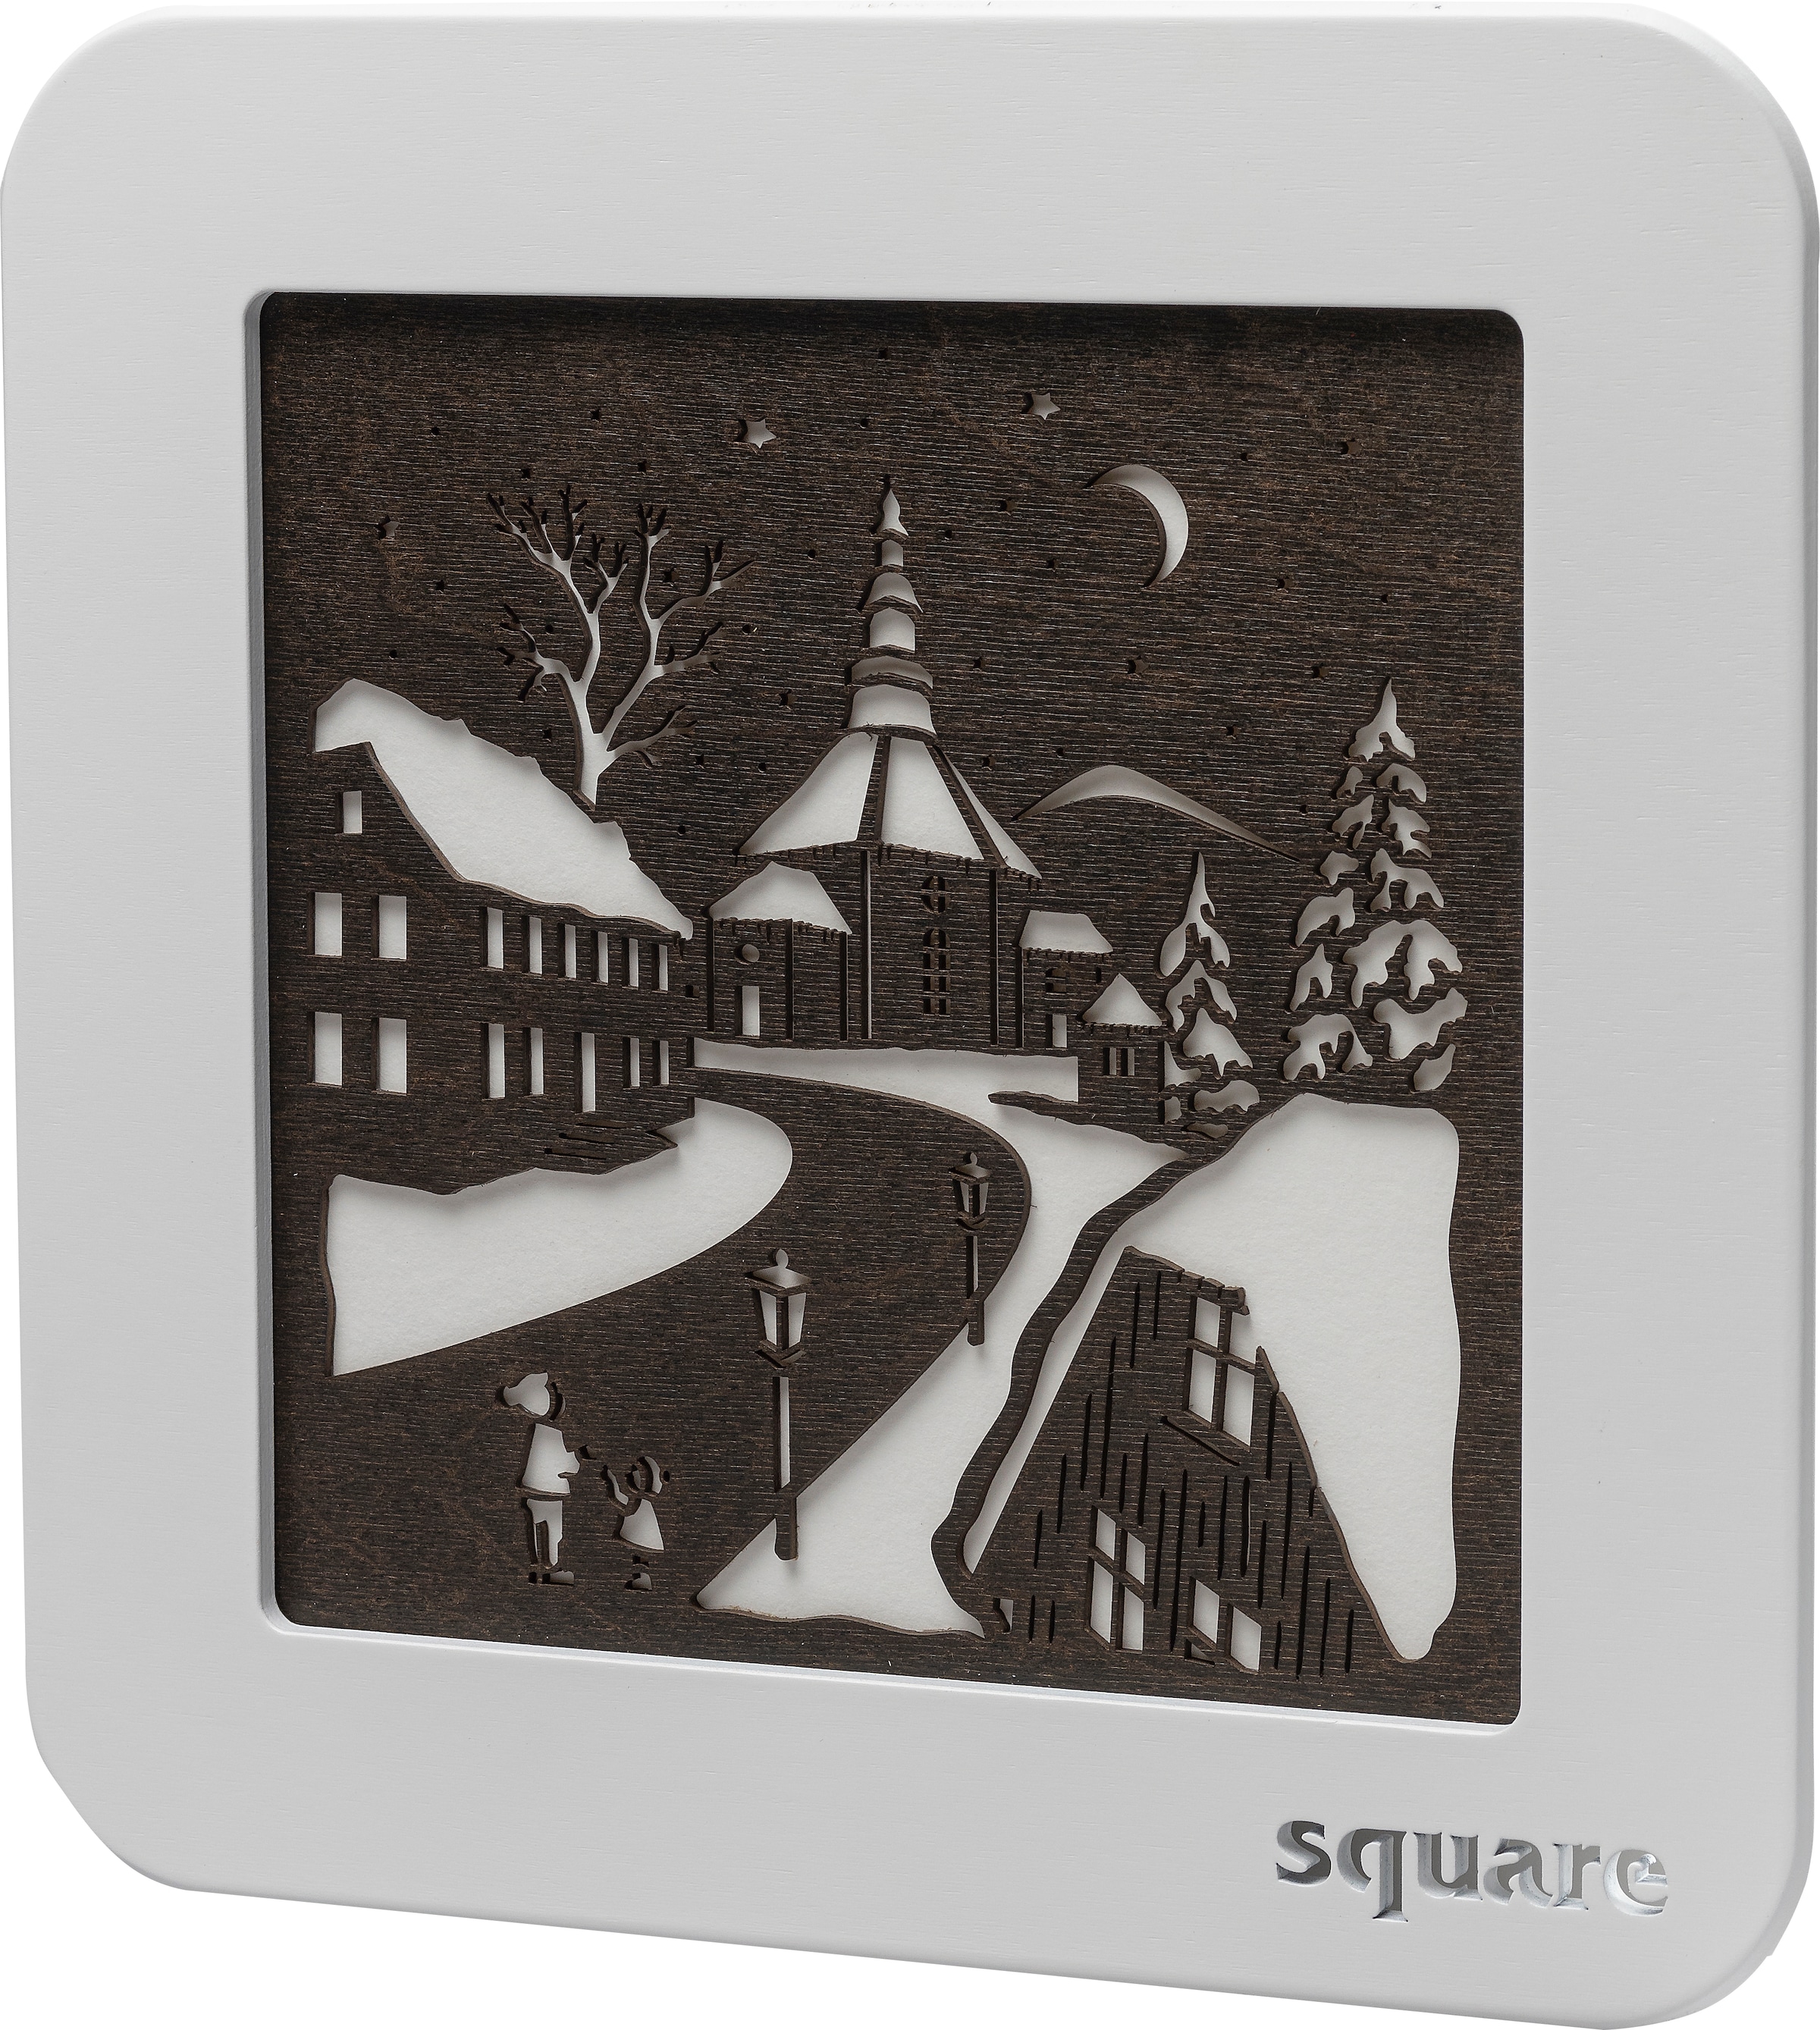 Weigla LED-Bild »Square - Wandbild Seiffen, Weihnachtsdeko«, (1 St.), mit Timer, einseitiges Motiv